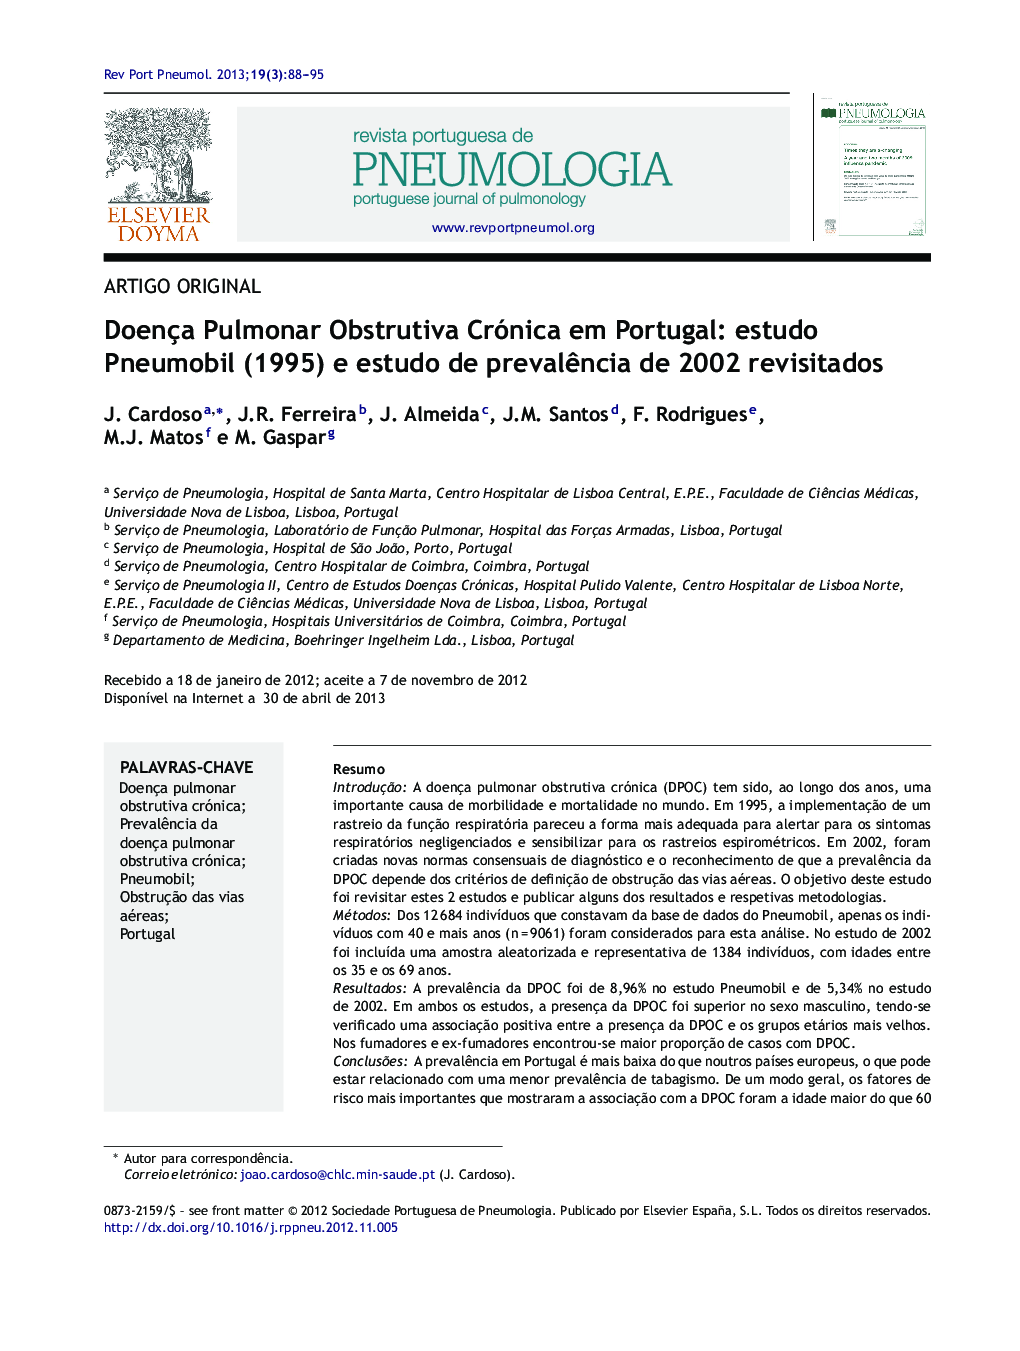 Doença Pulmonar Obstrutiva Crónica em Portugal: estudo Pneumobil (1995) e estudo de prevalência de 2002 revisitados